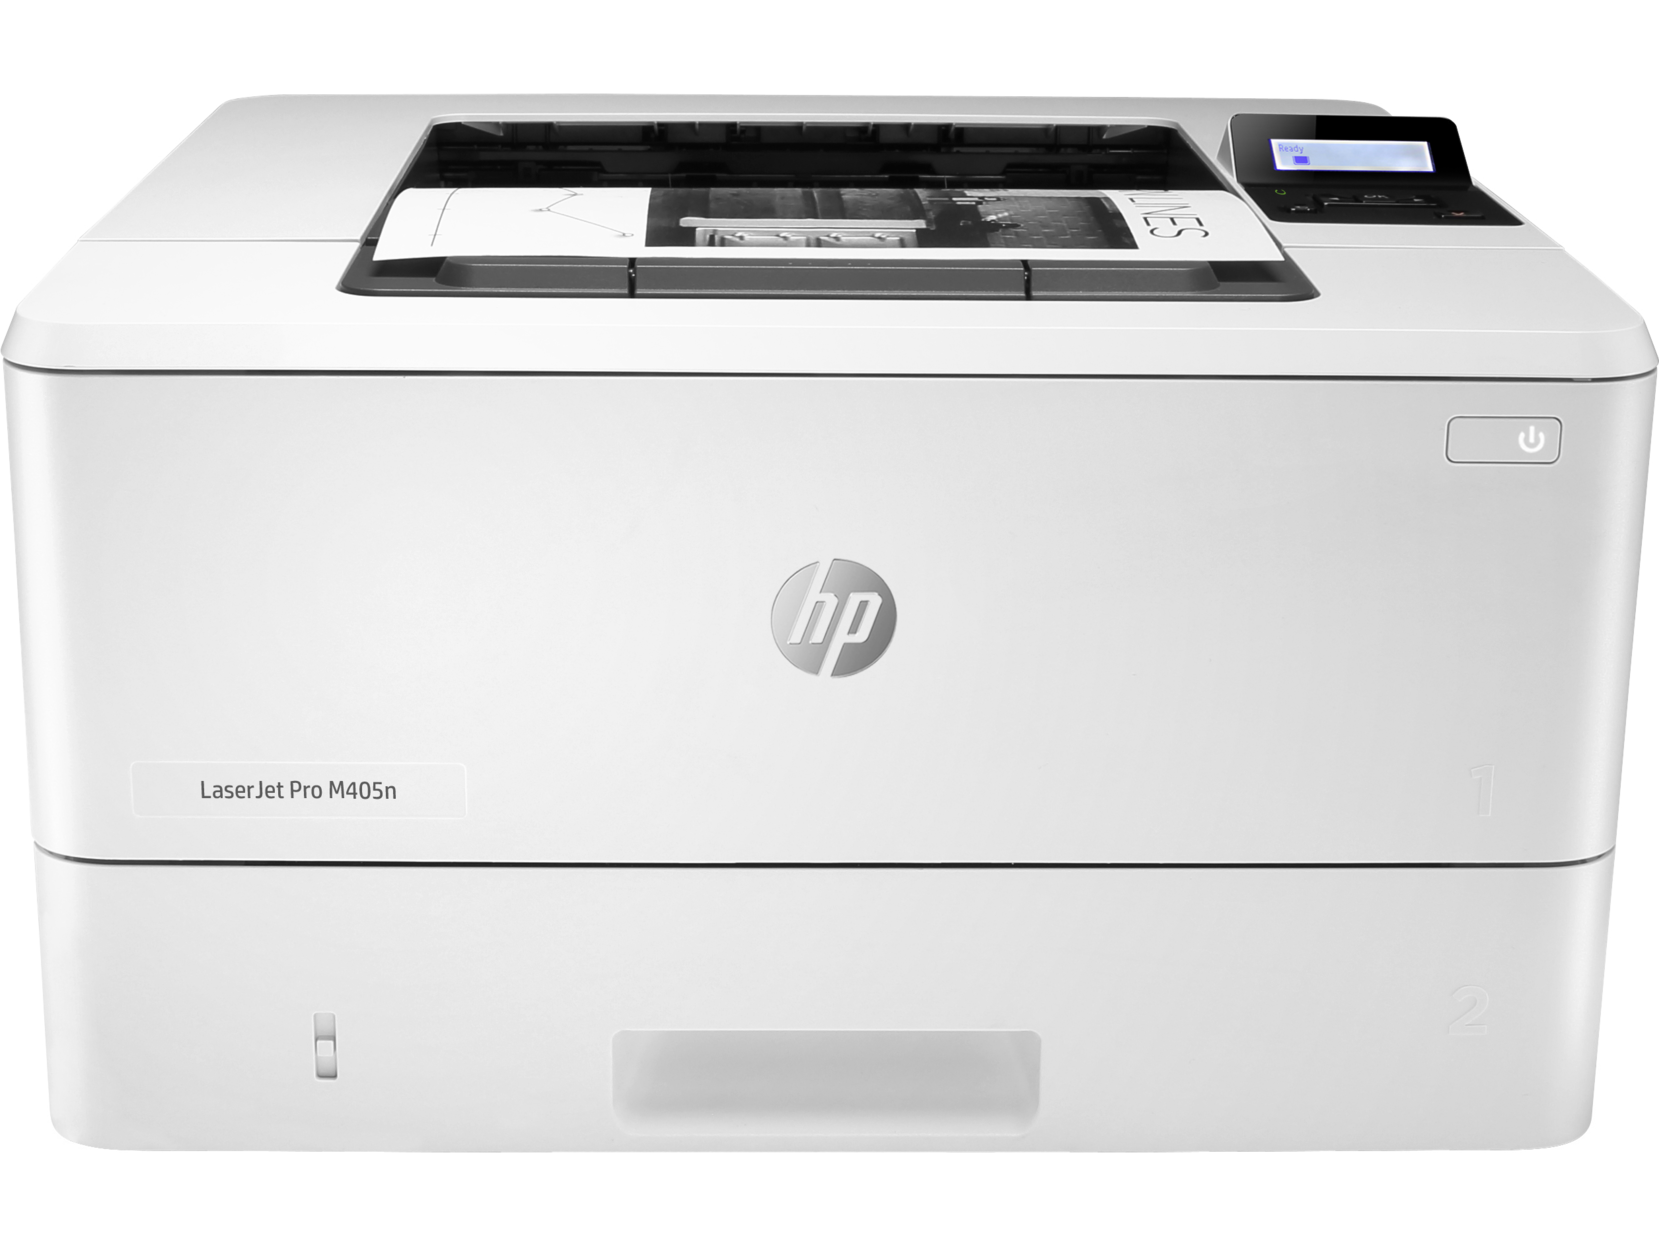 Máy in HP LaserJet Pro M405n (W1A57A) Network